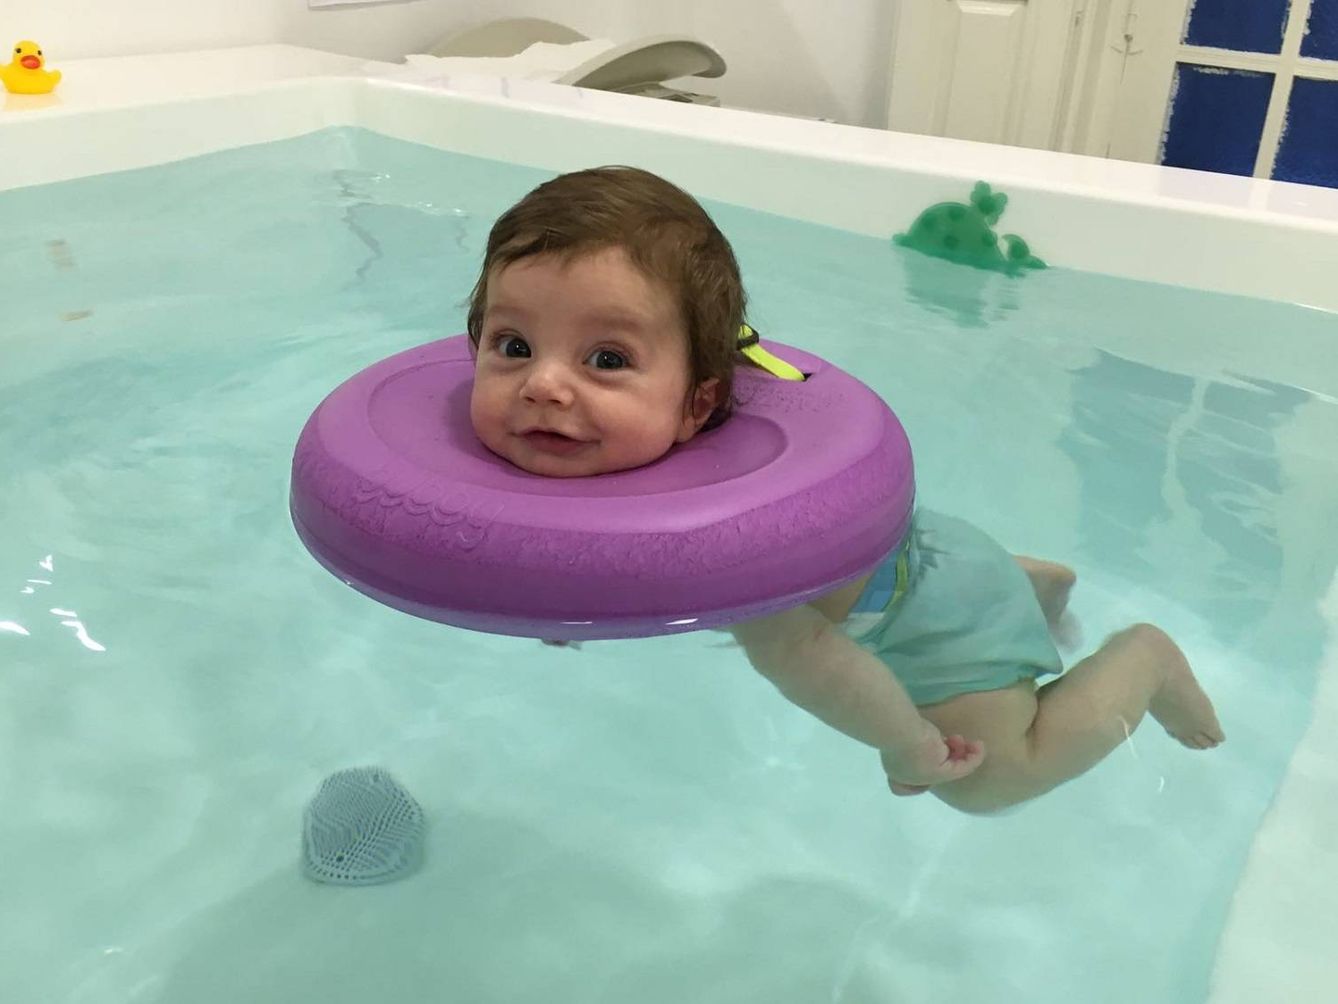 Los bebés flotan gracias a este flotador patentado por la UE